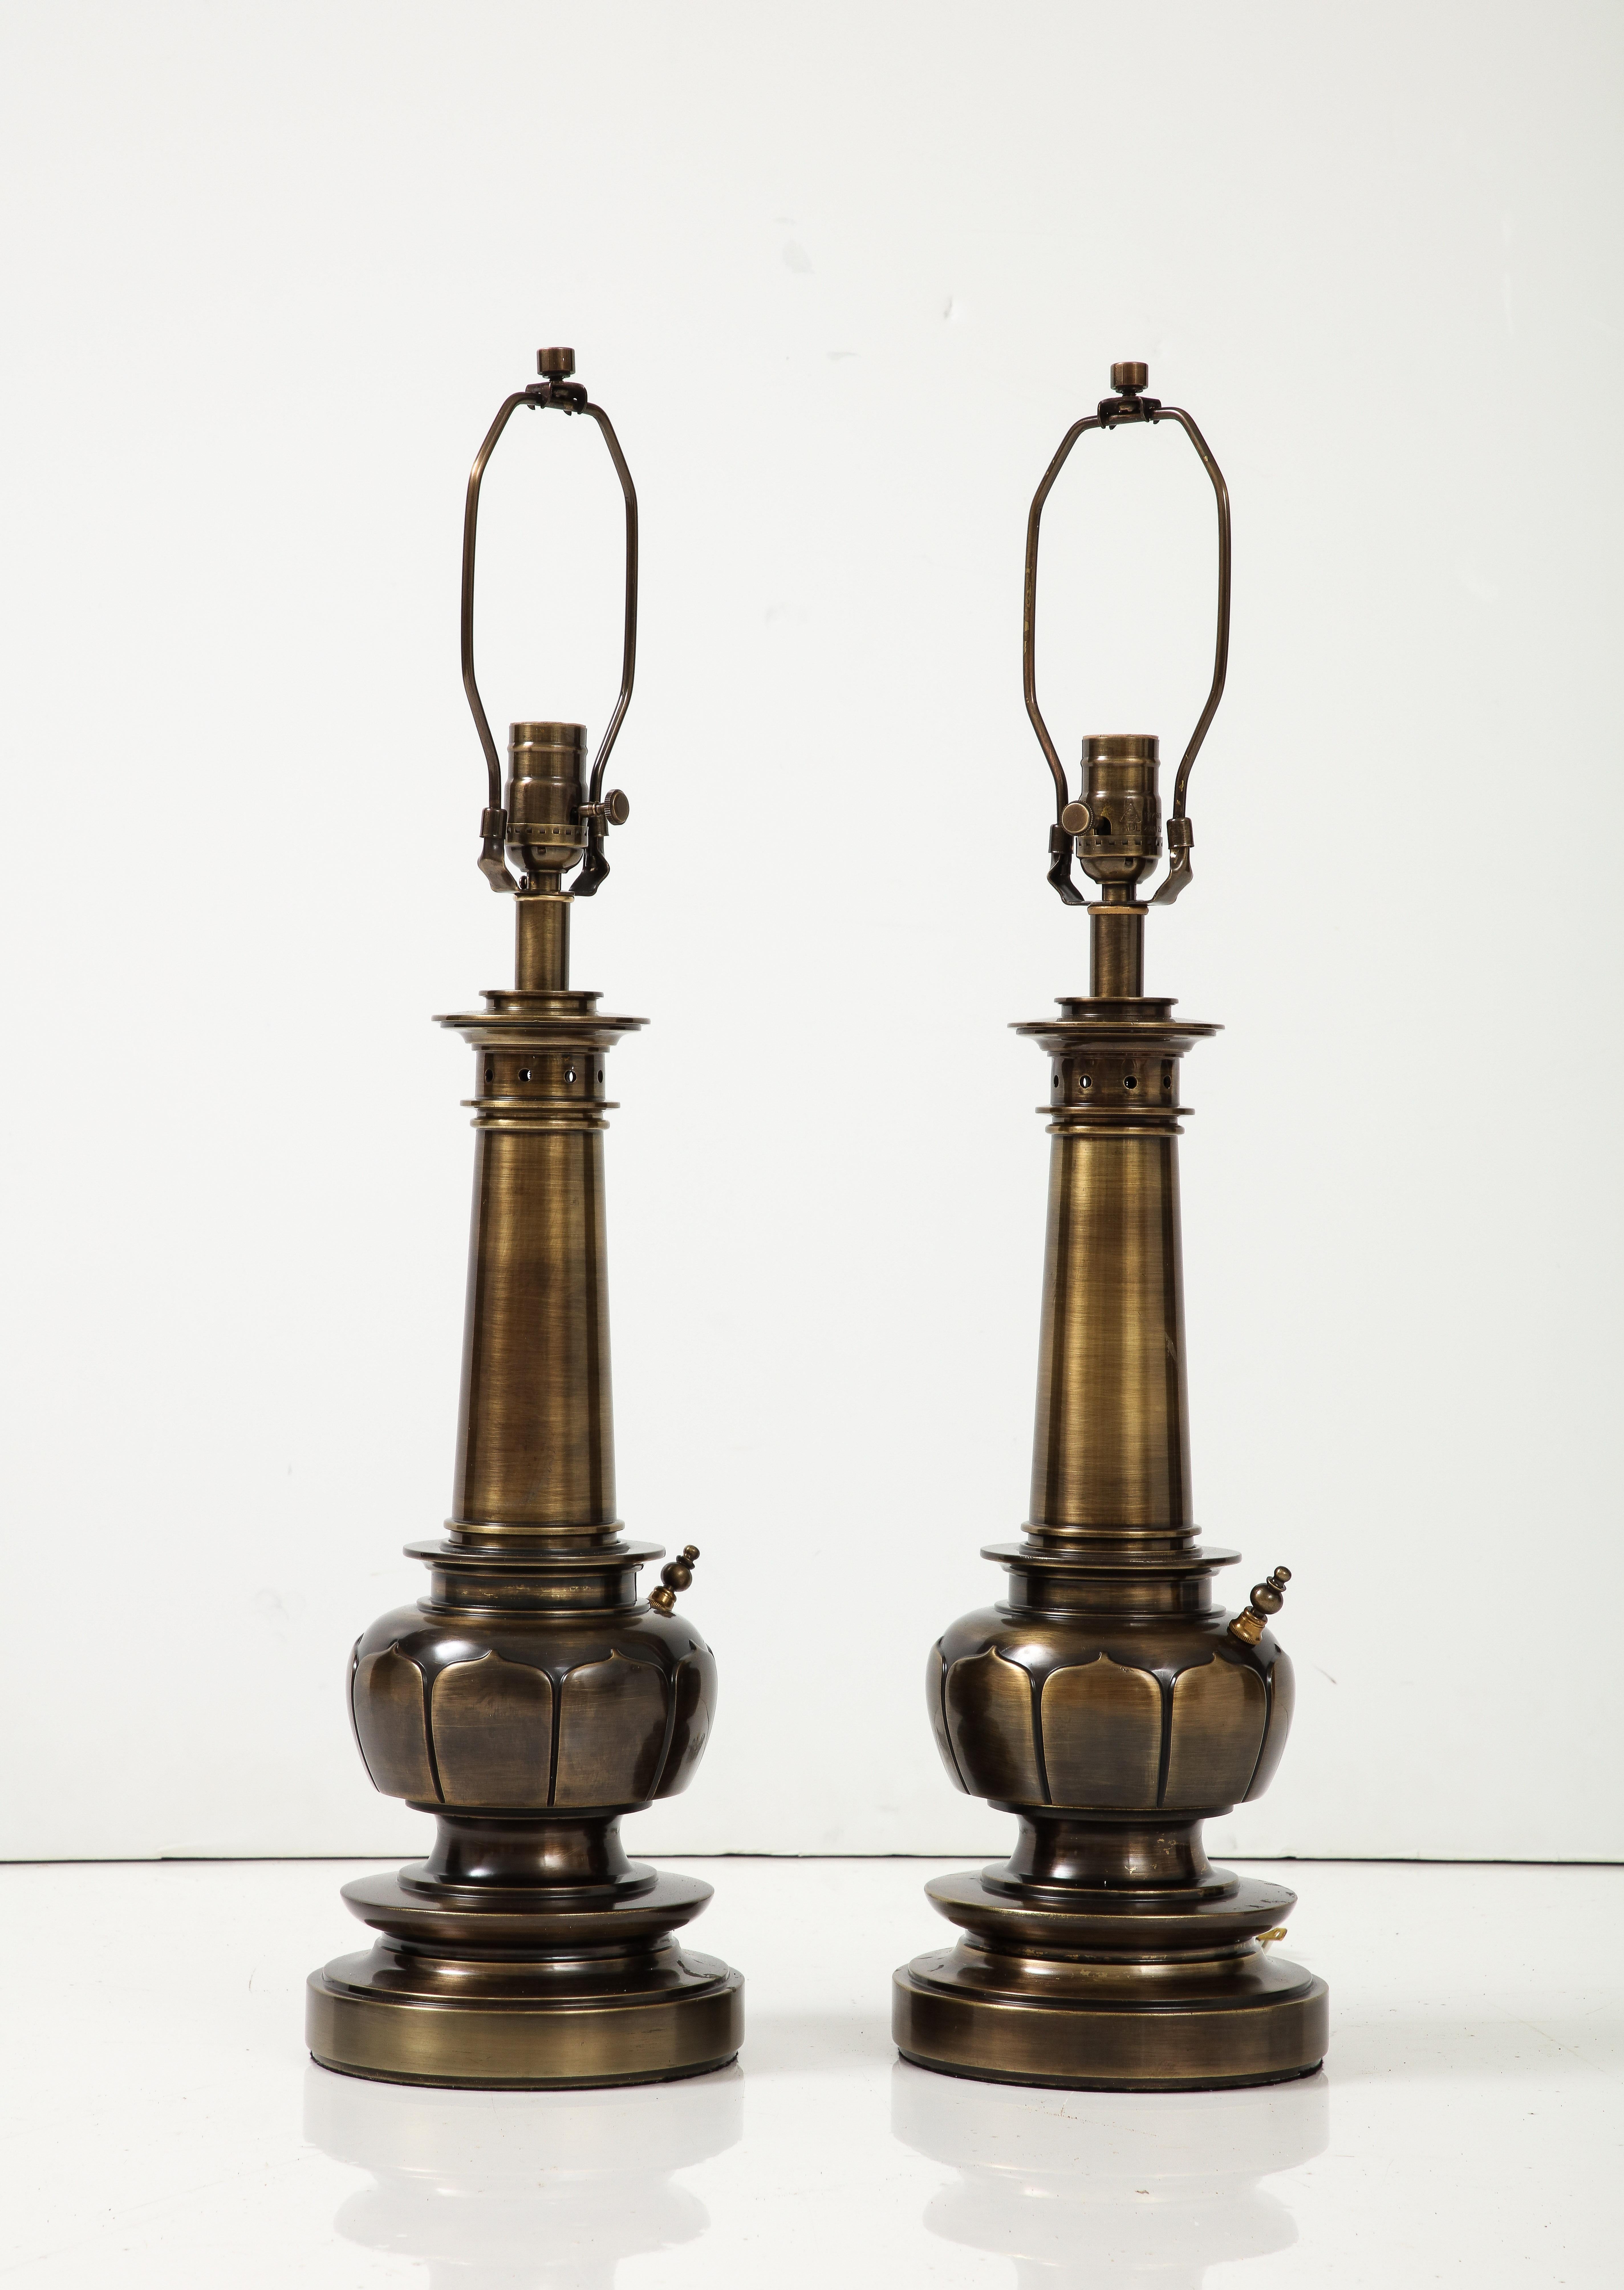 Stilisierte Lotos-Lampen aus der Mitte des Jahrhunderts in einer speziellen Bronze/Messing-Ausführung. Die Lampen wurden für den Gebrauch in den USA umverdrahtet und können mit Edison-Glühbirnen bis zu 100 Watt betrieben werden. Die Lampen haben